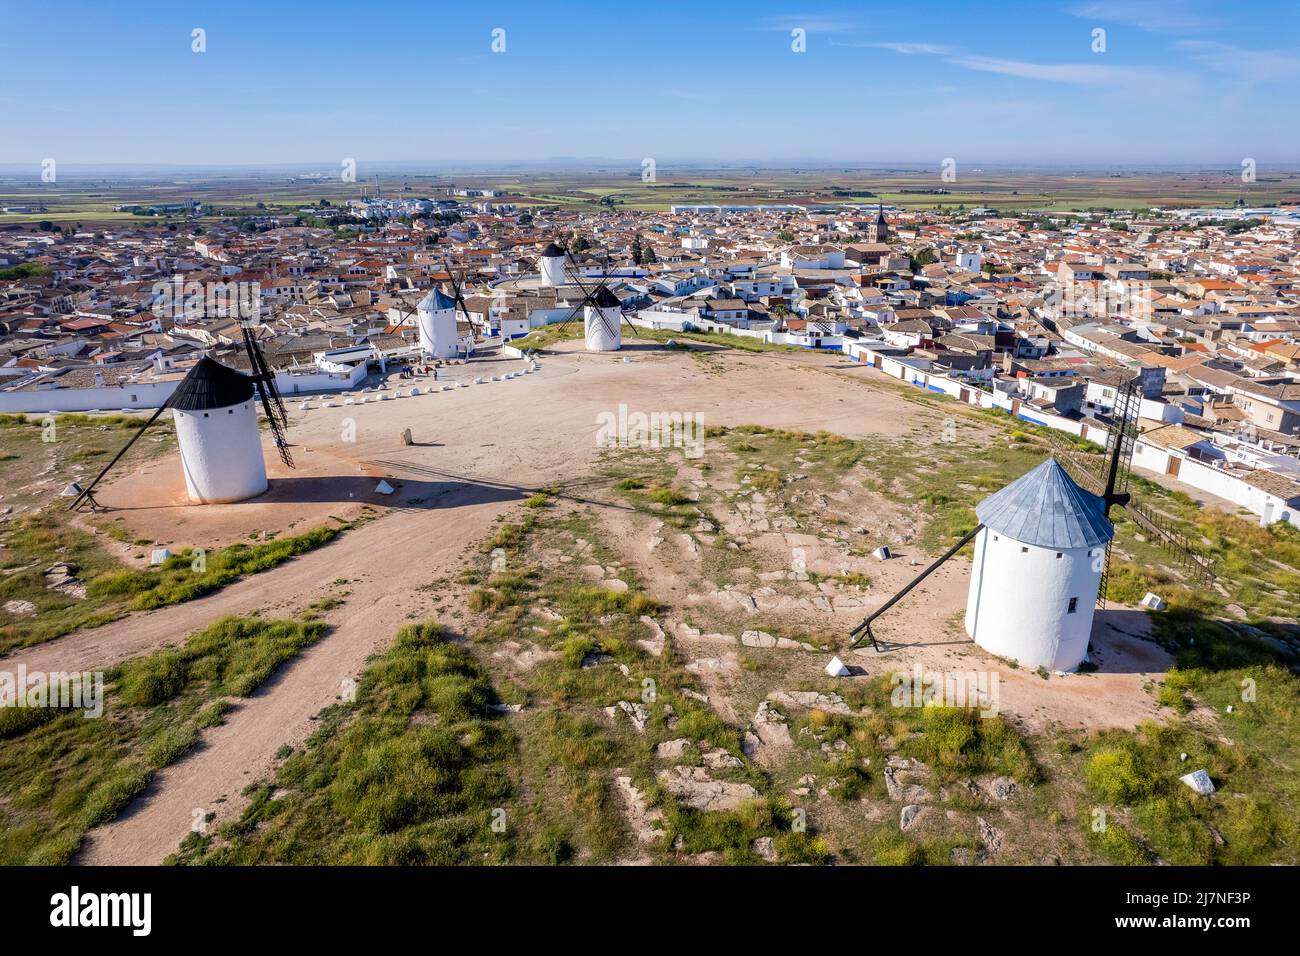 Vue aérienne des moulins à vent typiquement espagnols, Campo de Criptana, Castilla-la Mancha, Espagne Banque D'Images